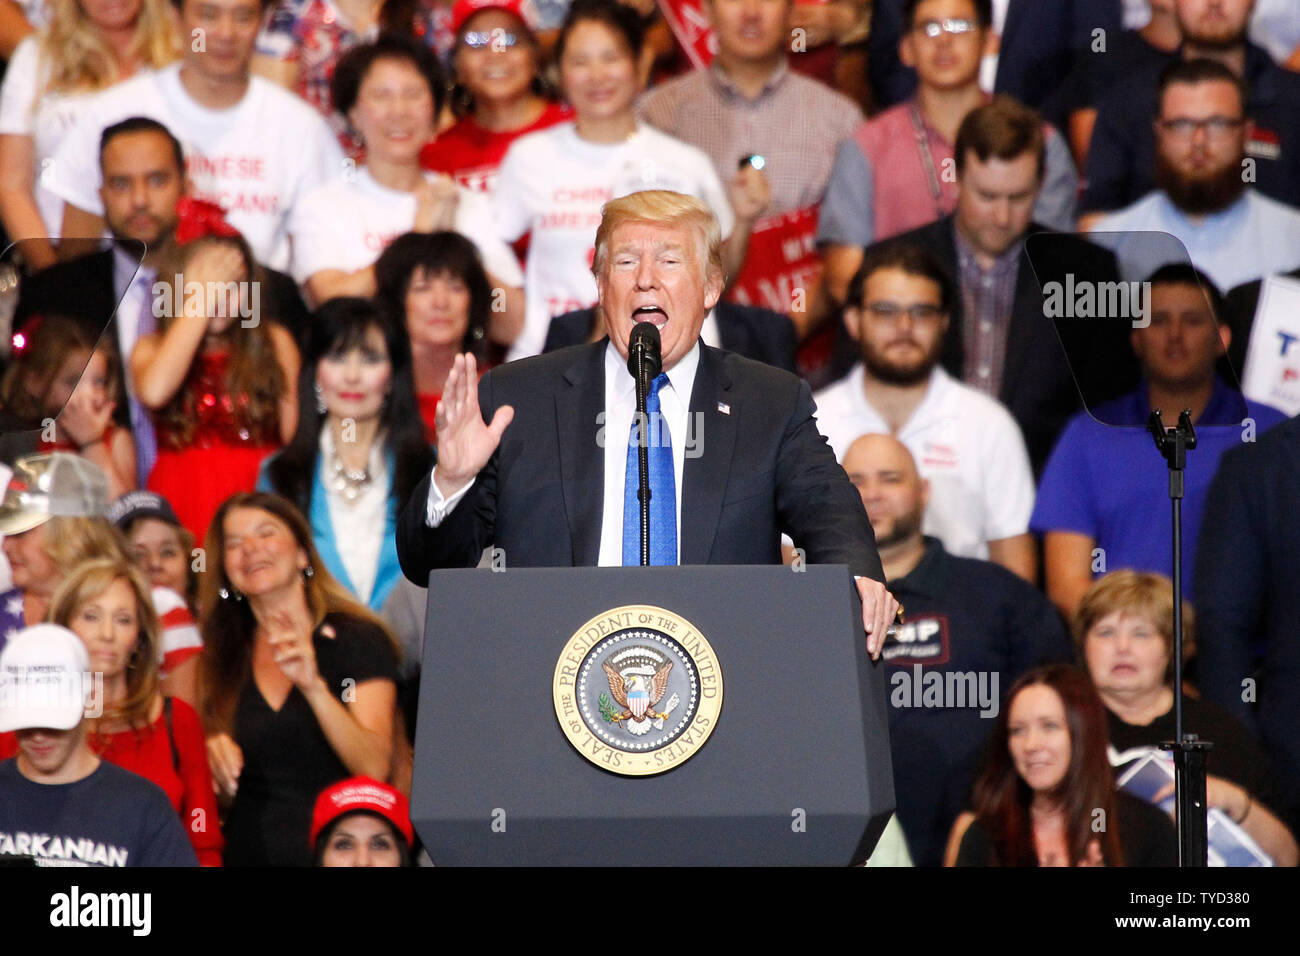 Le président Donald Trump traite de personnes sur scène lors d'un rassemblement à la Las Vegas Convention Center à Las Vegas, Nevada le 20 septembre, 2018. Photo de James Atoa/UPI Banque D'Images